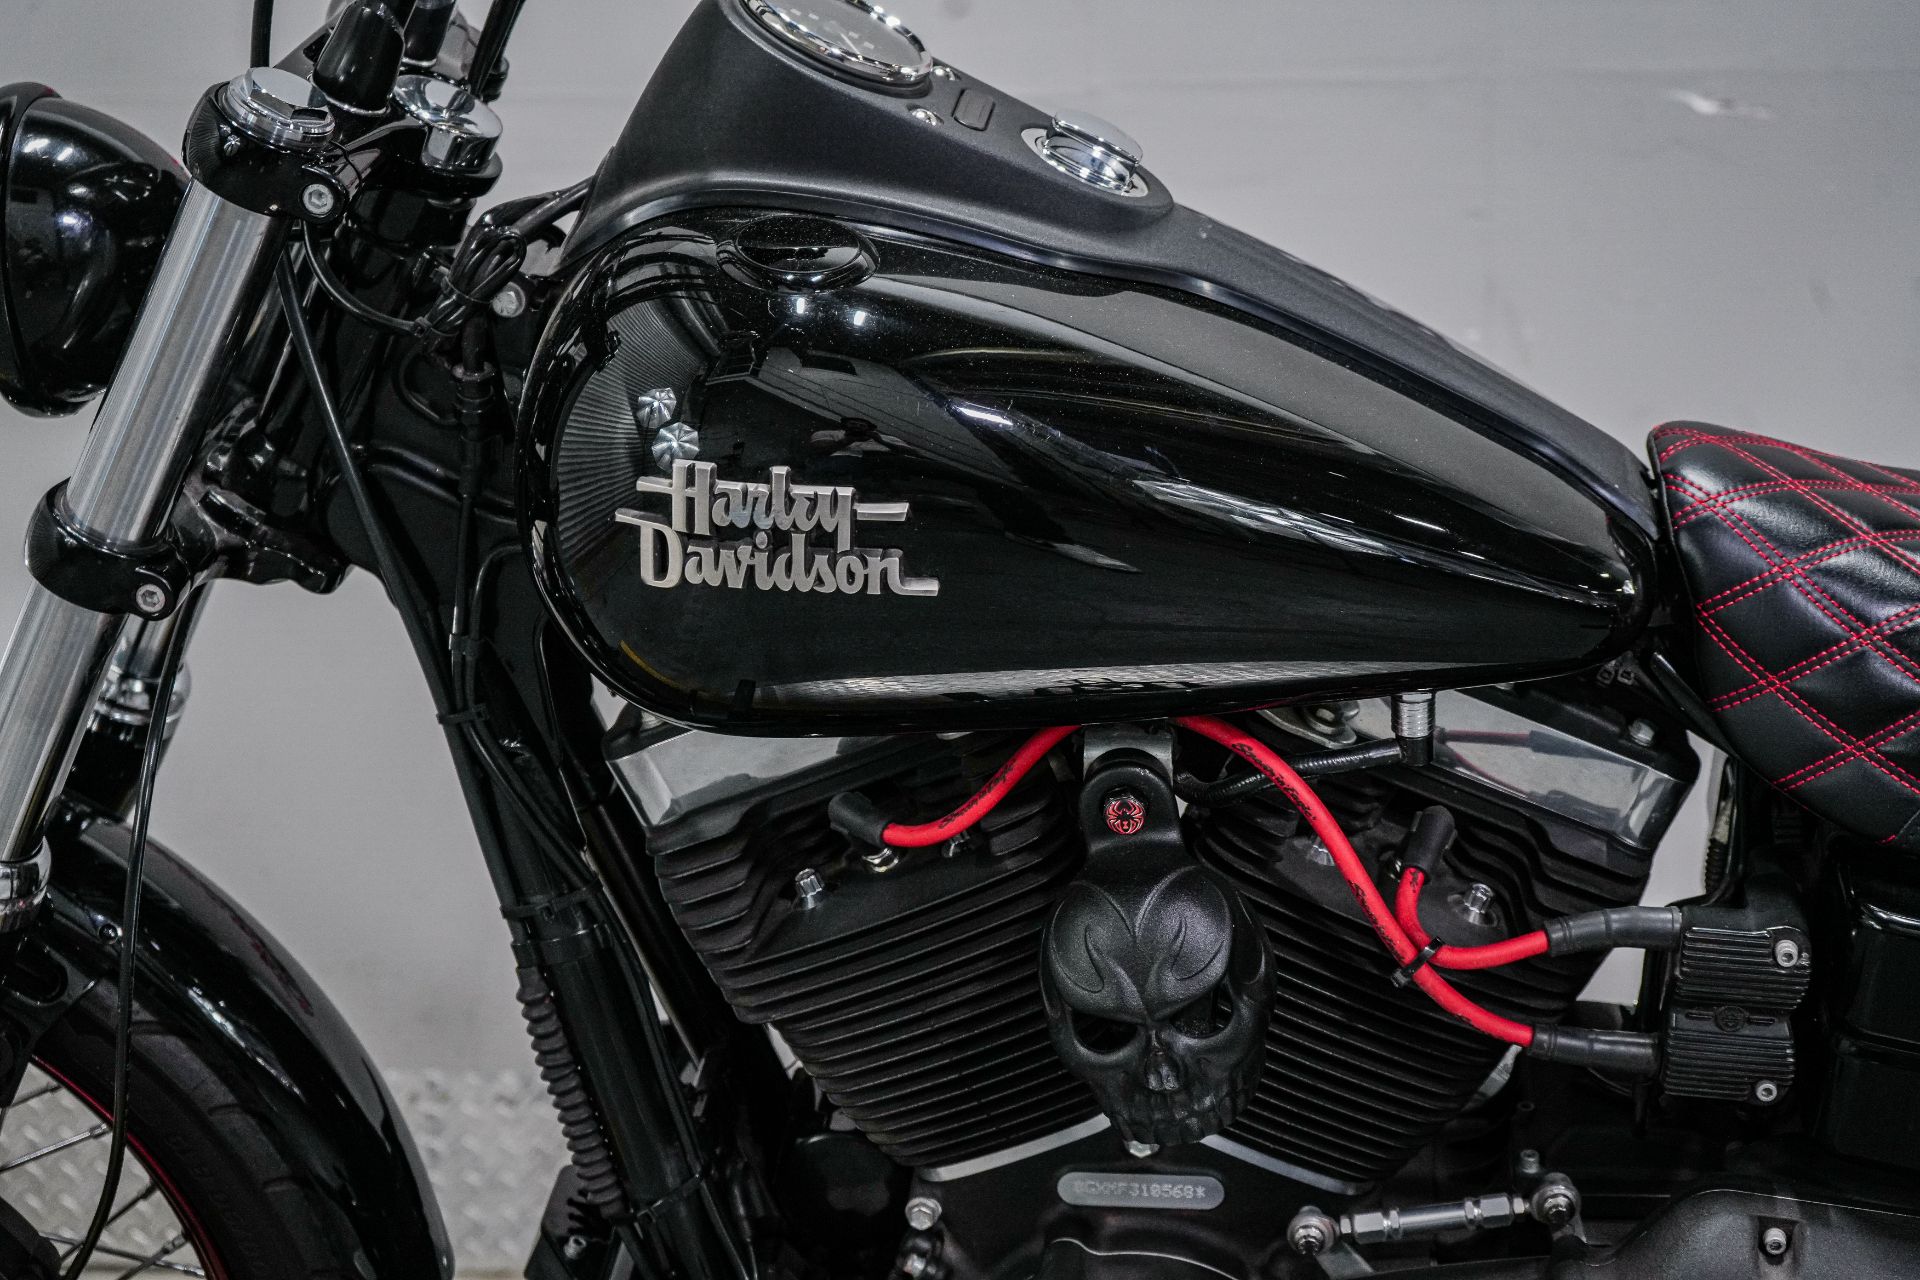 2015 Harley-Davidson Dyna Street Bob in Sacramento, California - Photo 5